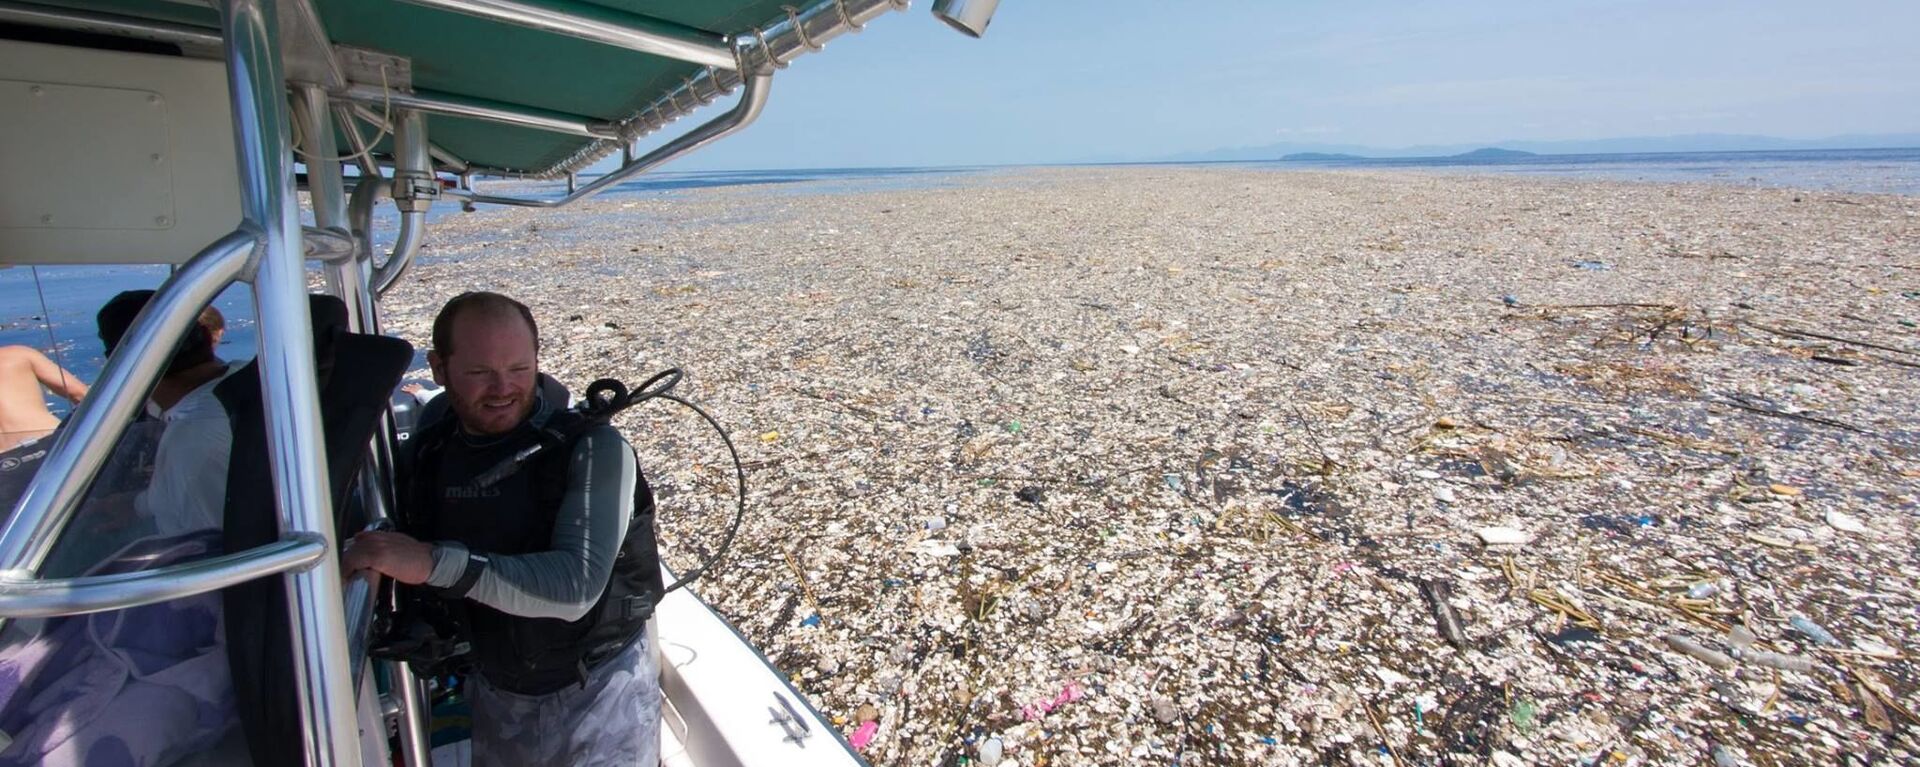 Пластиковый мусор в море у Карибских островов - Sputnik Việt Nam, 1920, 05.10.2021